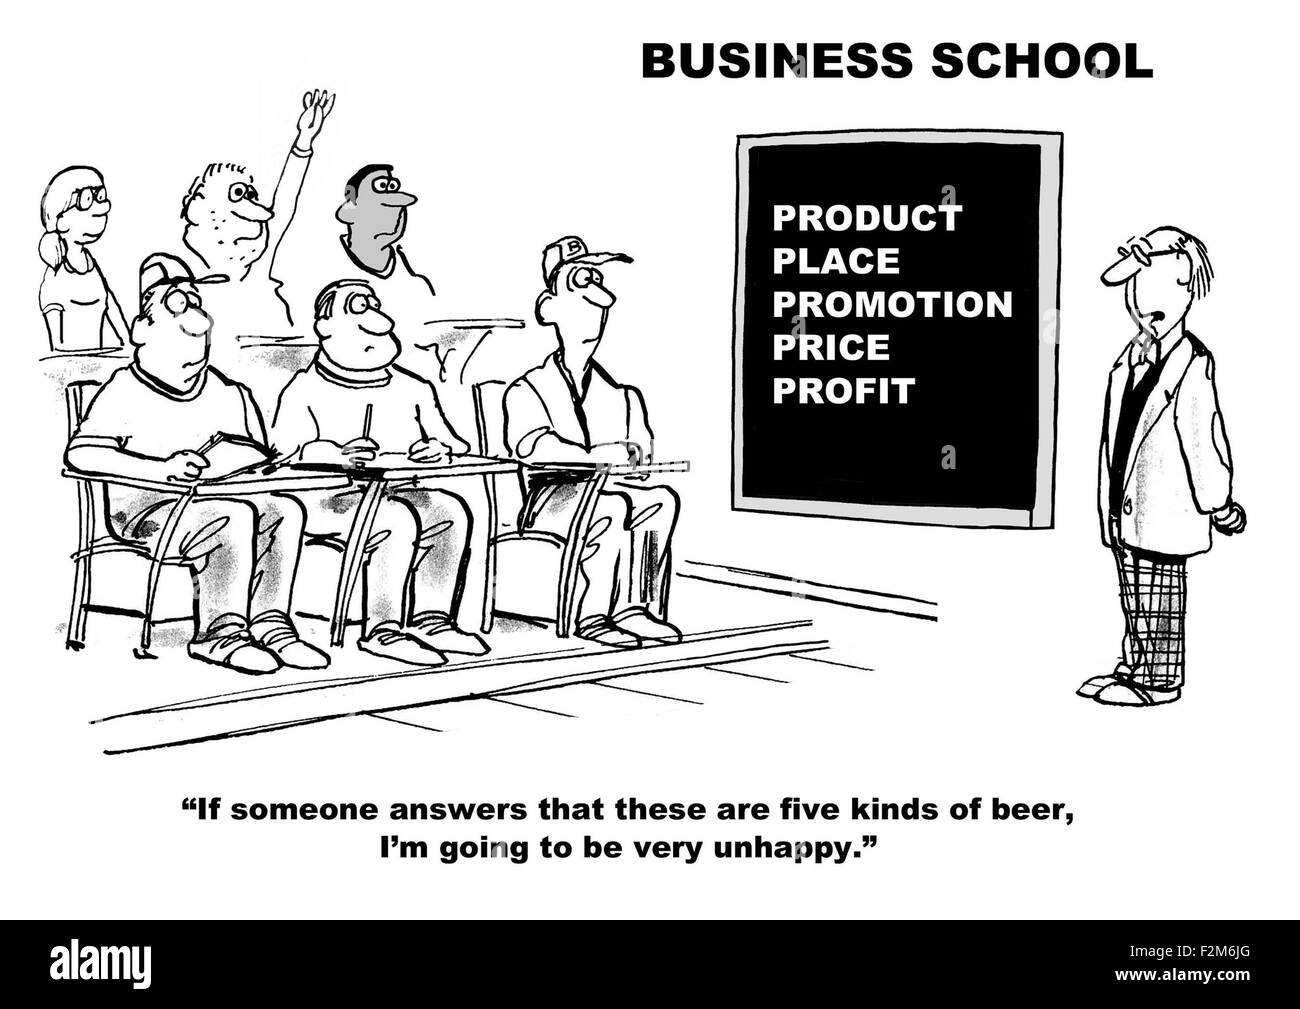 Wirtschaft und Bildung Cartoon zeigt Professor an Bord 5 S, die besagt "Falls jemand Answe... fünf Arten von Bier... sehr unglücklich". Stockfoto